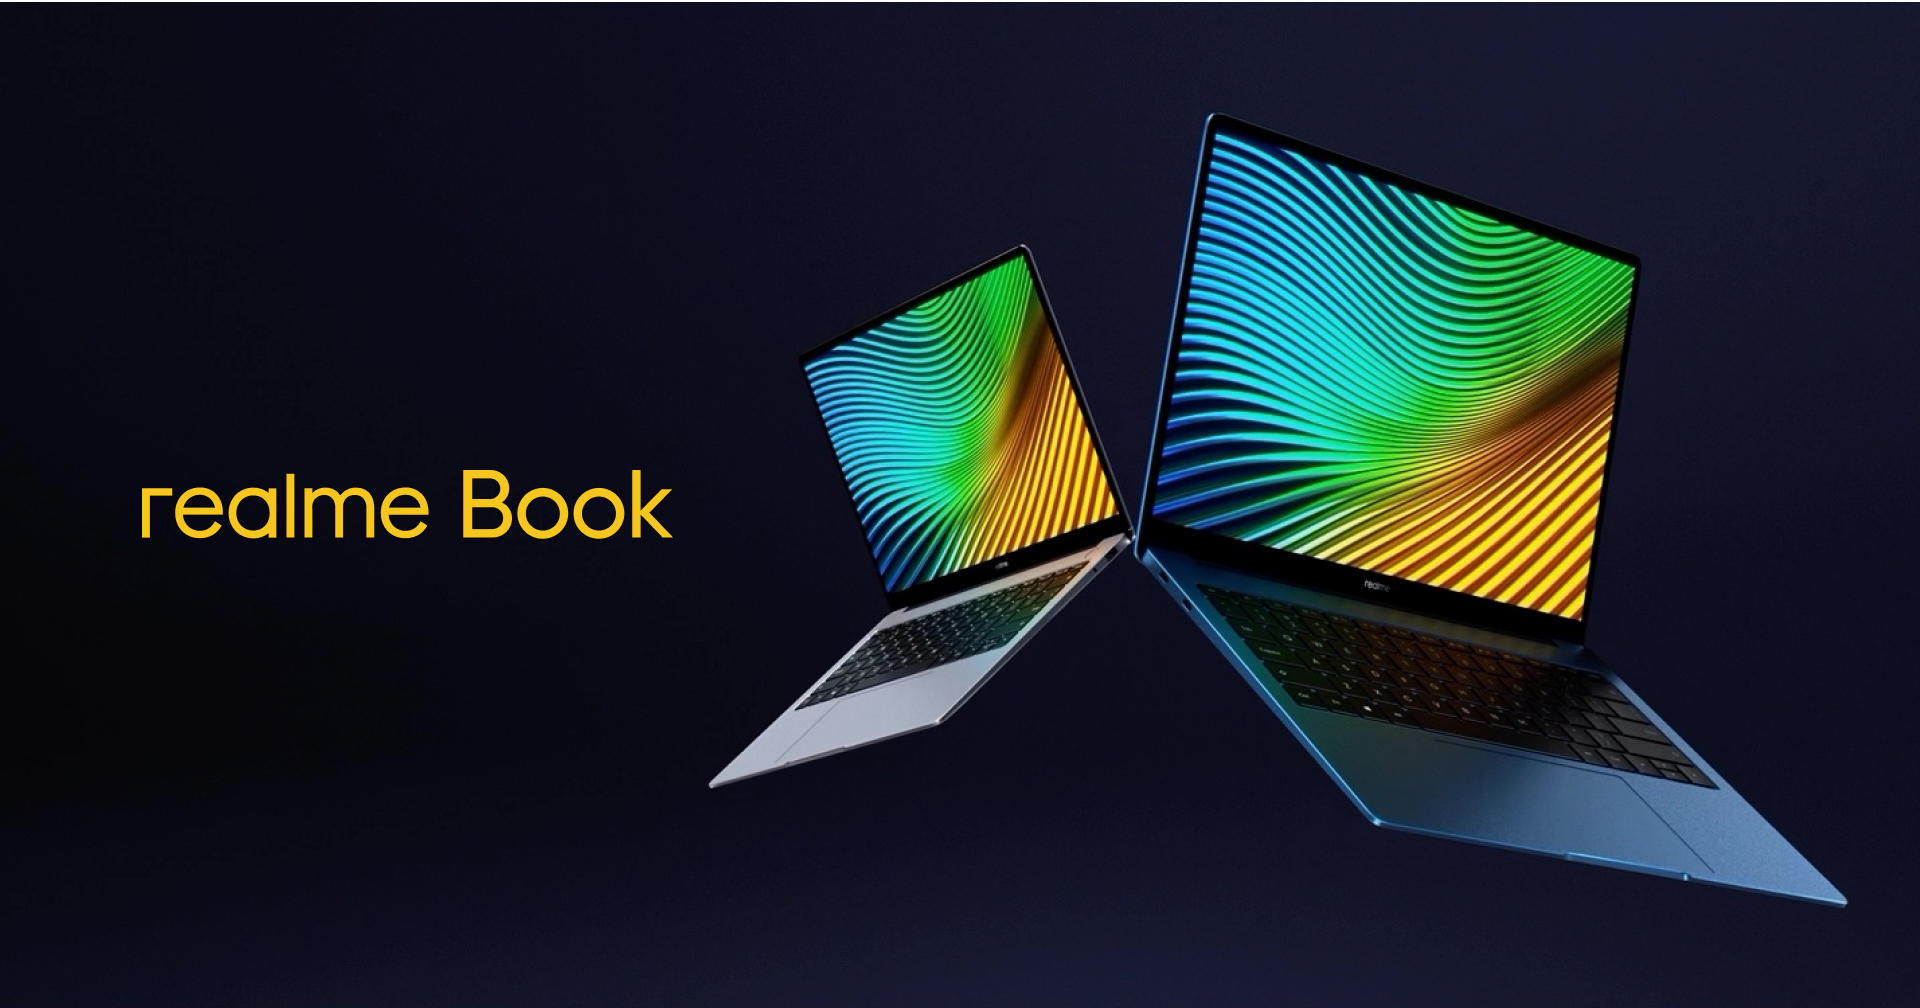 เปิดตัว realme Book แล็ปท็อปวินโดวส์สุดบาง จอใหญ่ 14 นิ้ว พร้อมชิปทรงพลังจาก Intel ในราคาสบายกระเป๋า